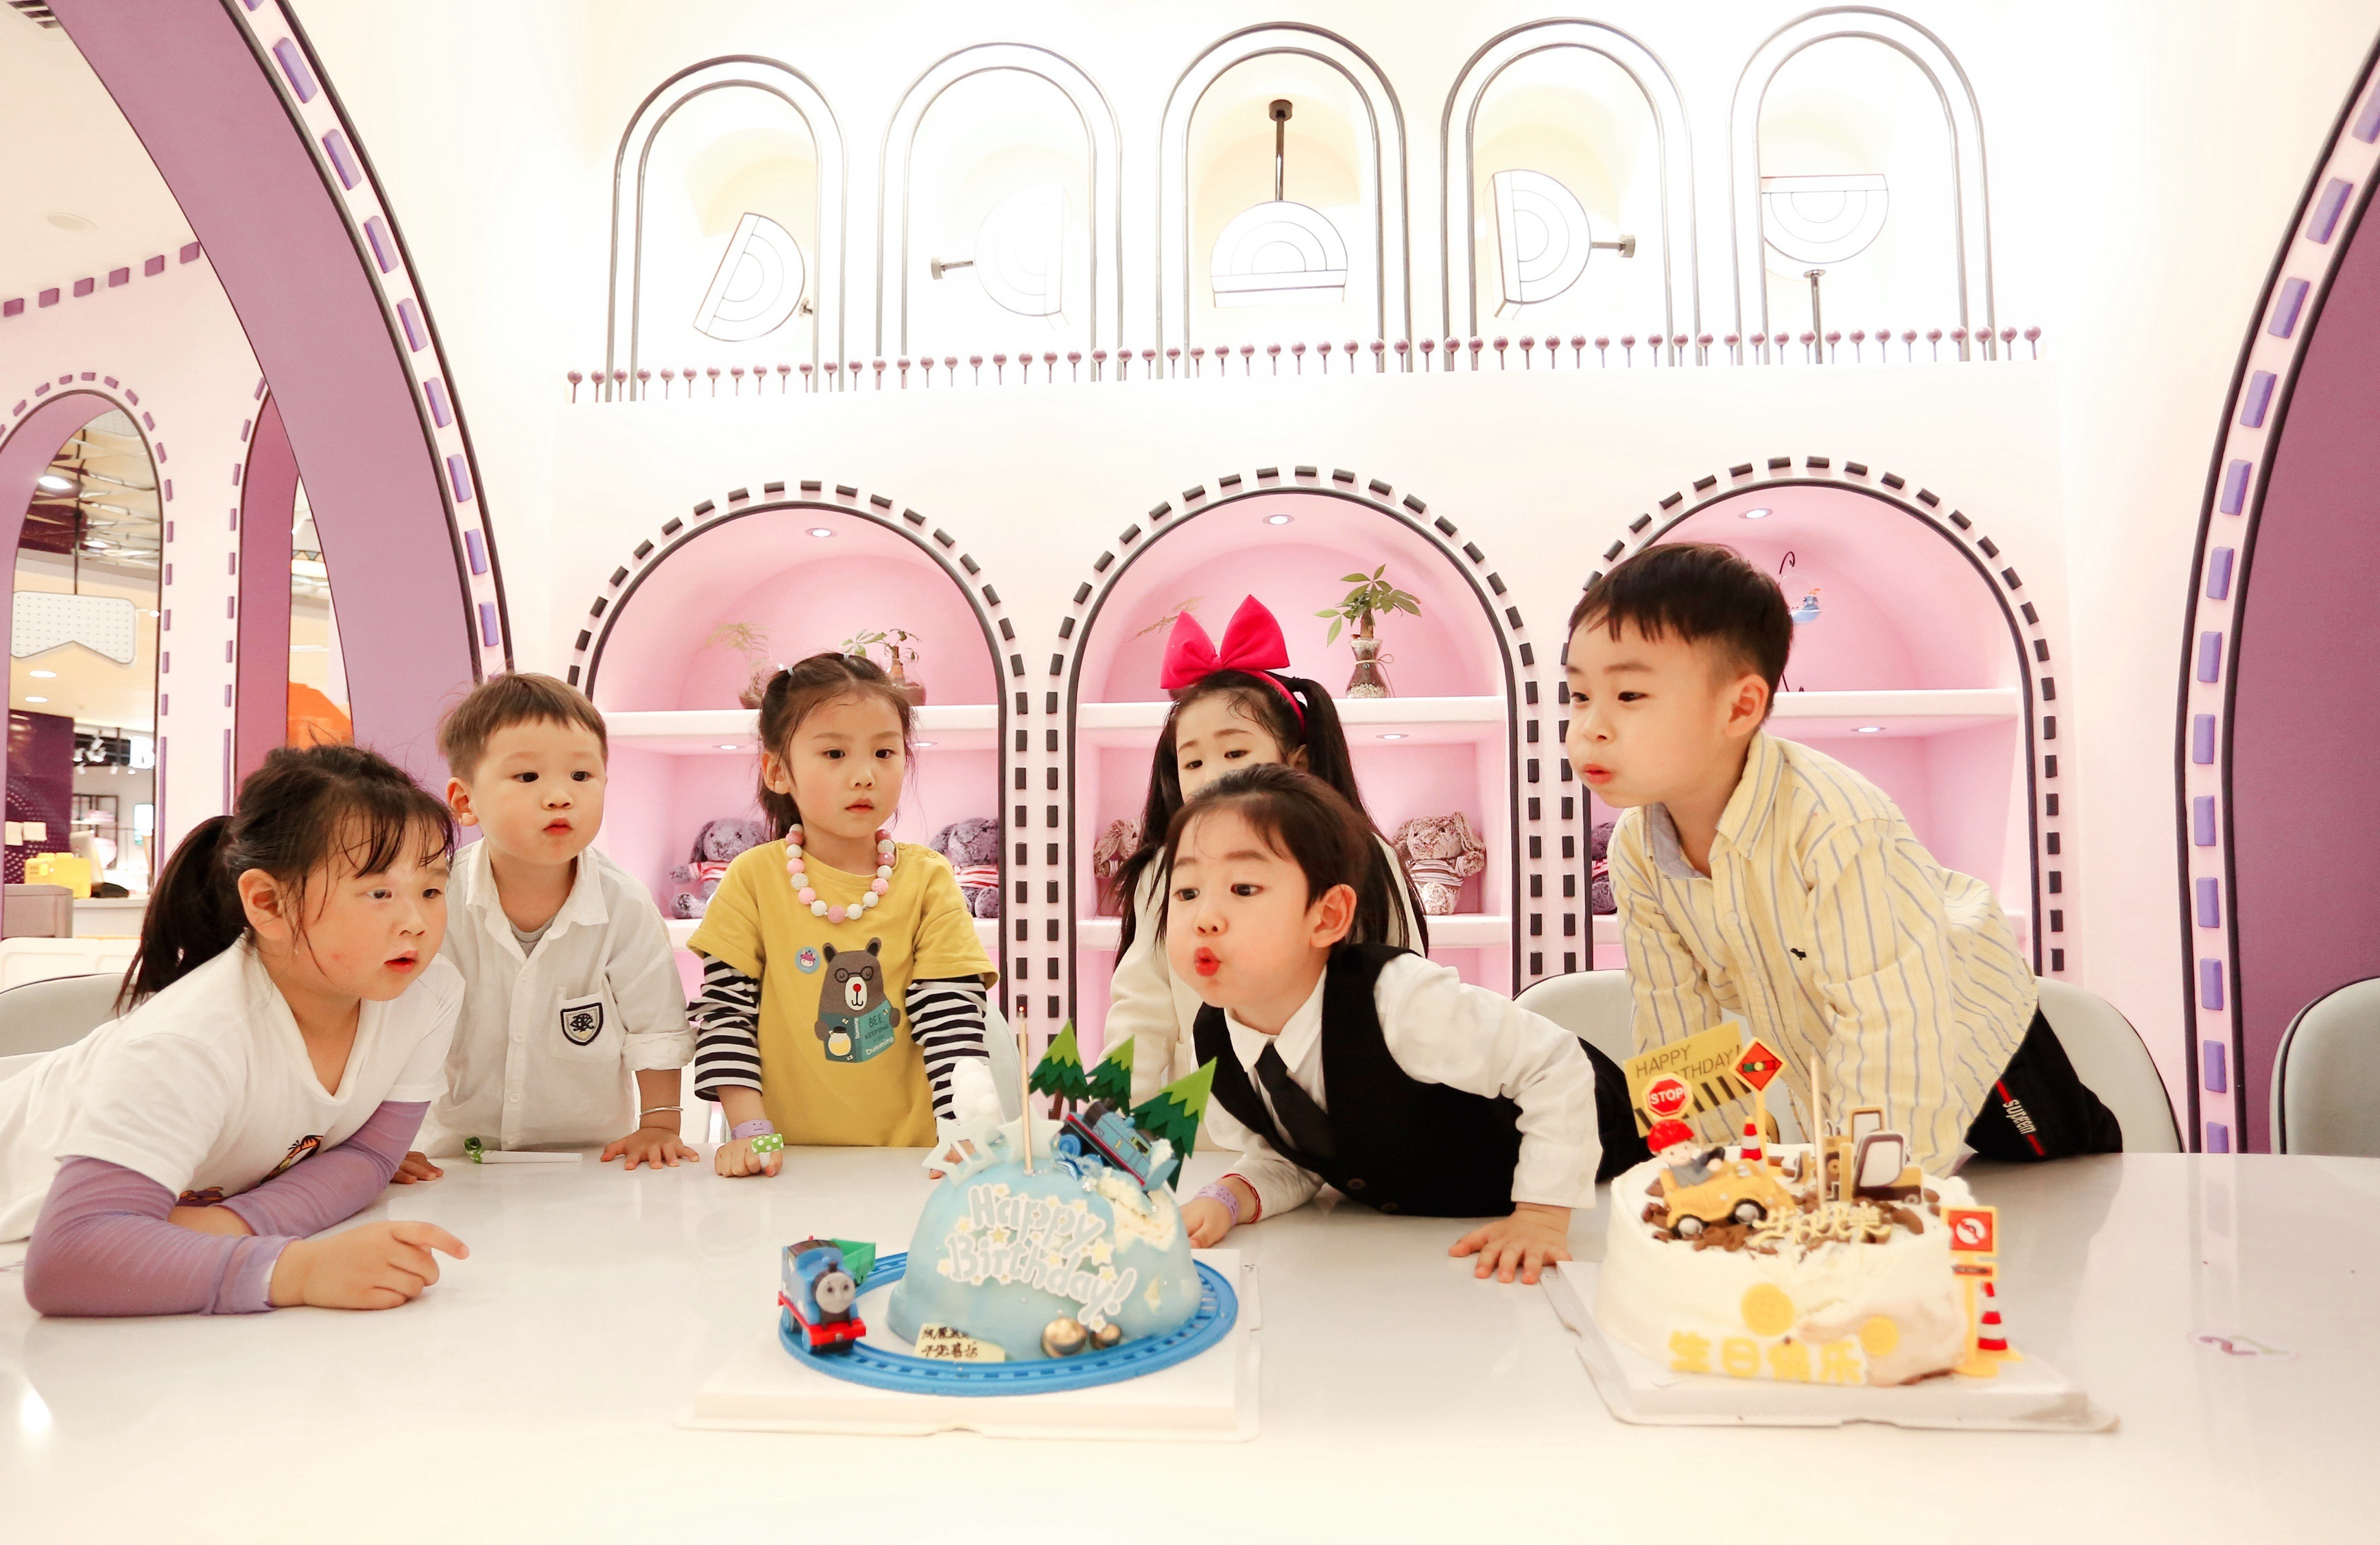 悦悦和她的朋友在亲子餐厅过生日。均为受访者供图